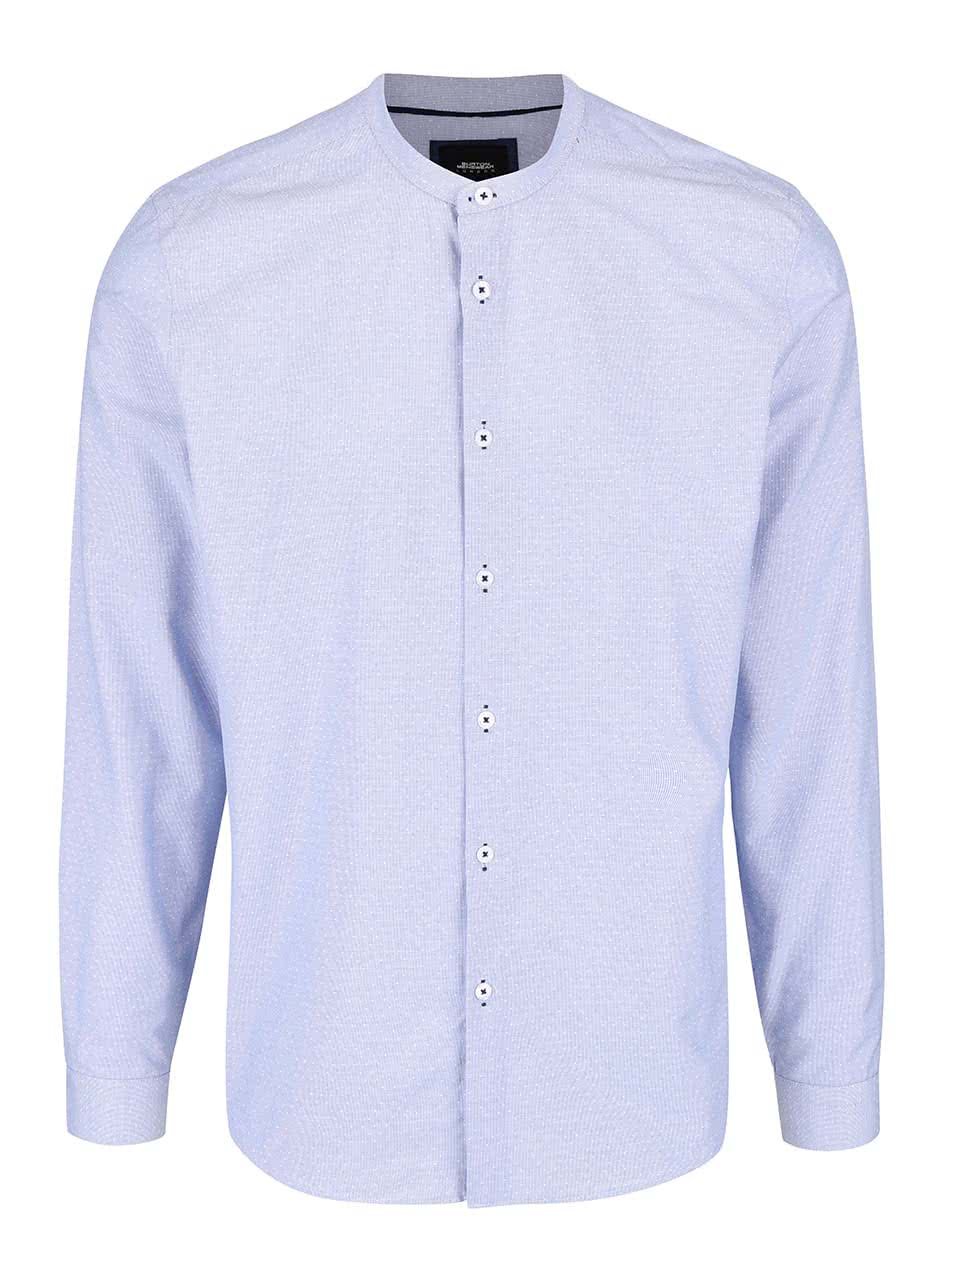 Světle modrá vzorovaná košile bez límečku Burton Menswear London